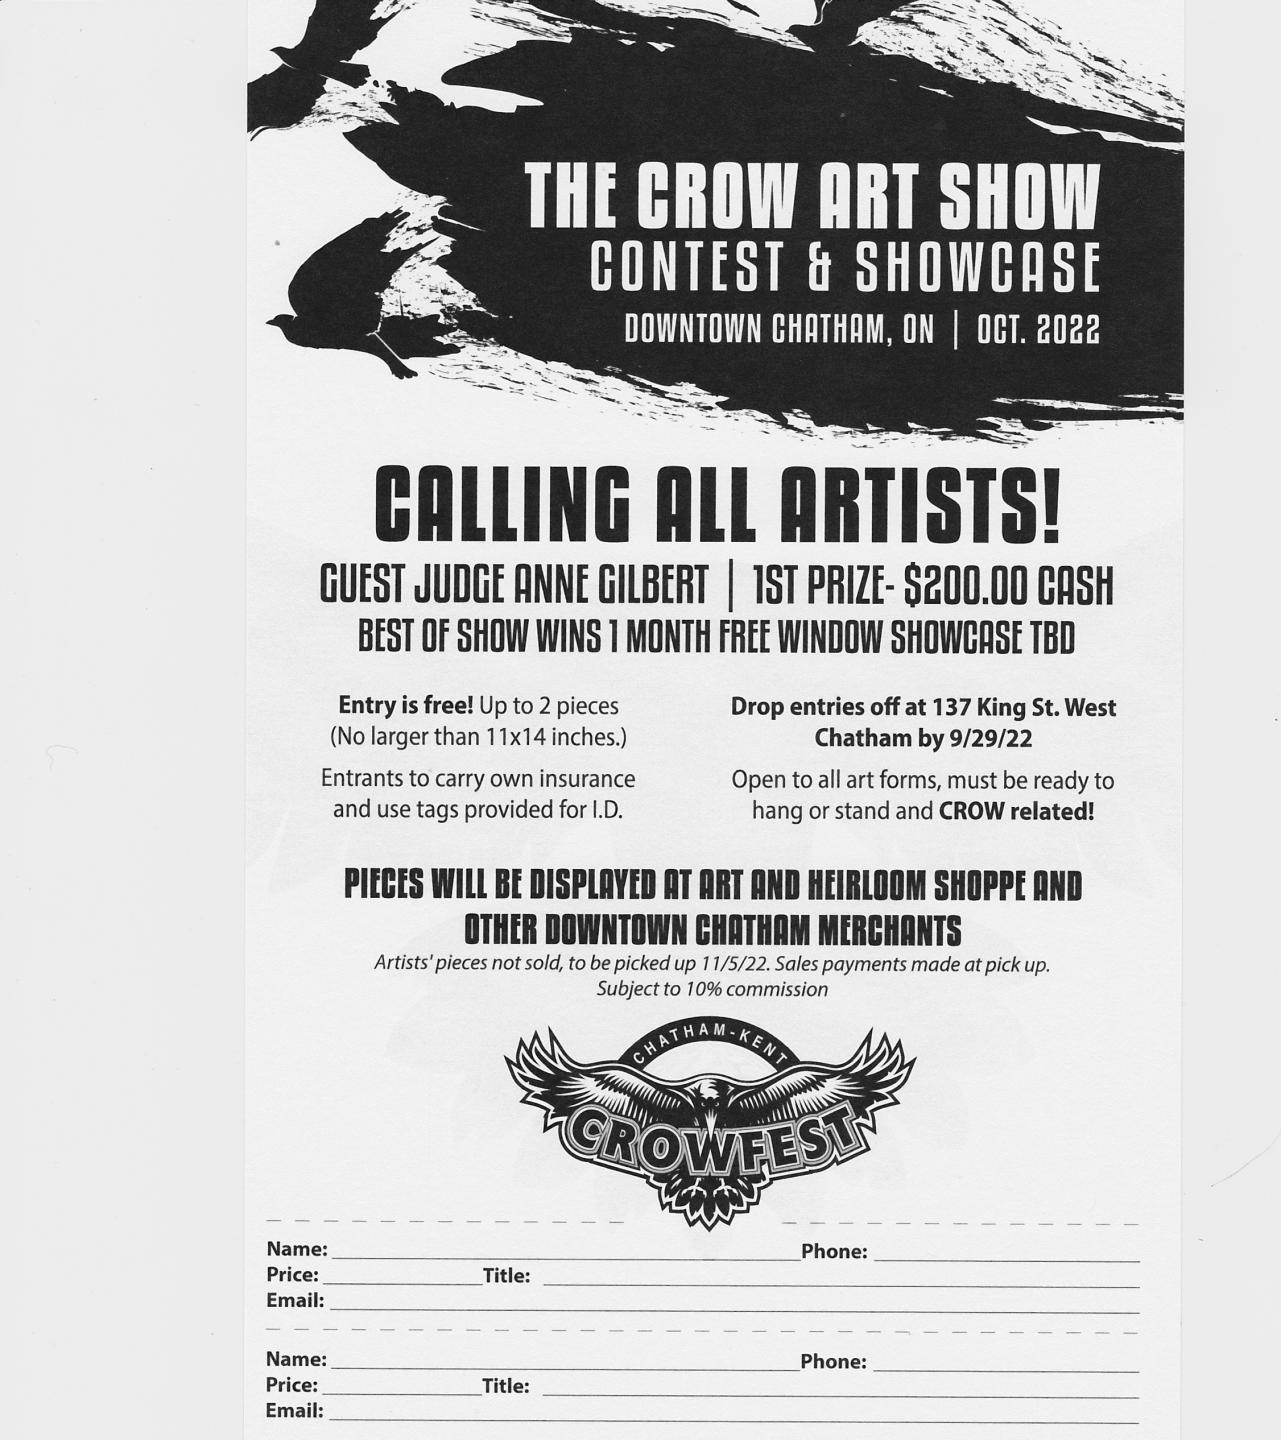 Crowfest Art Contest Form